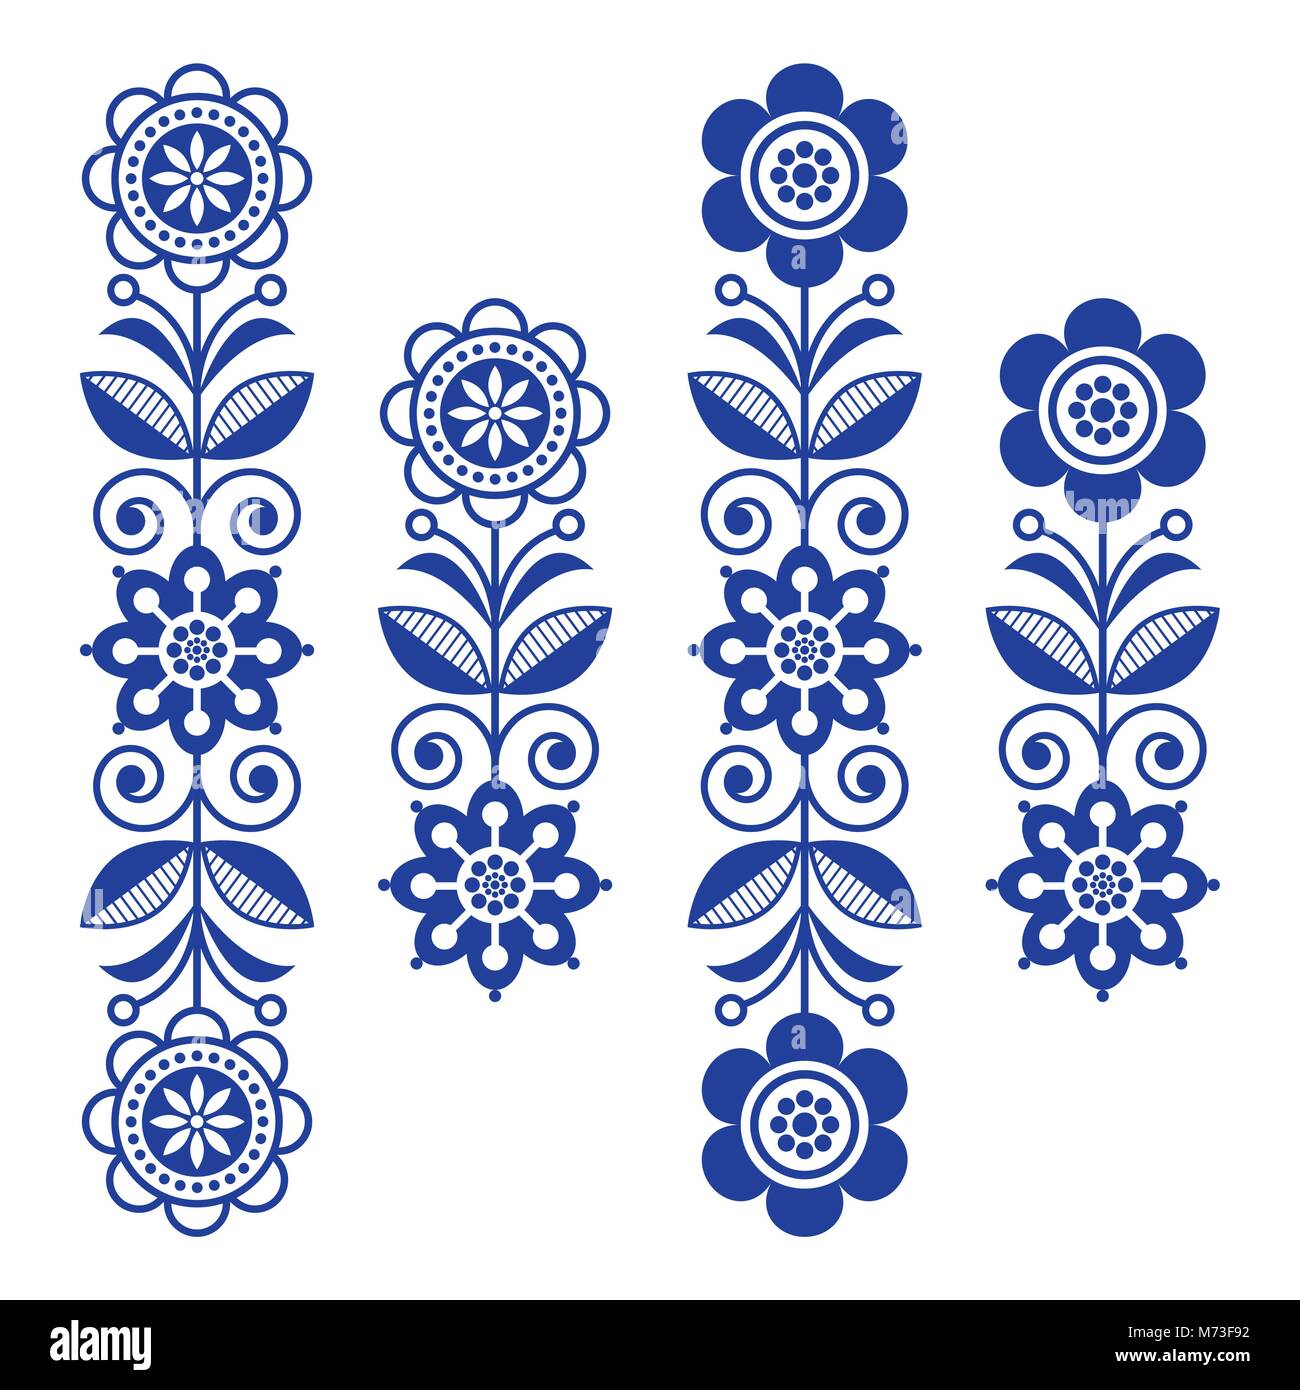 Skandinavische floral Design Elemente, Volkskunst Muster - lange Streifen Stock Vektor